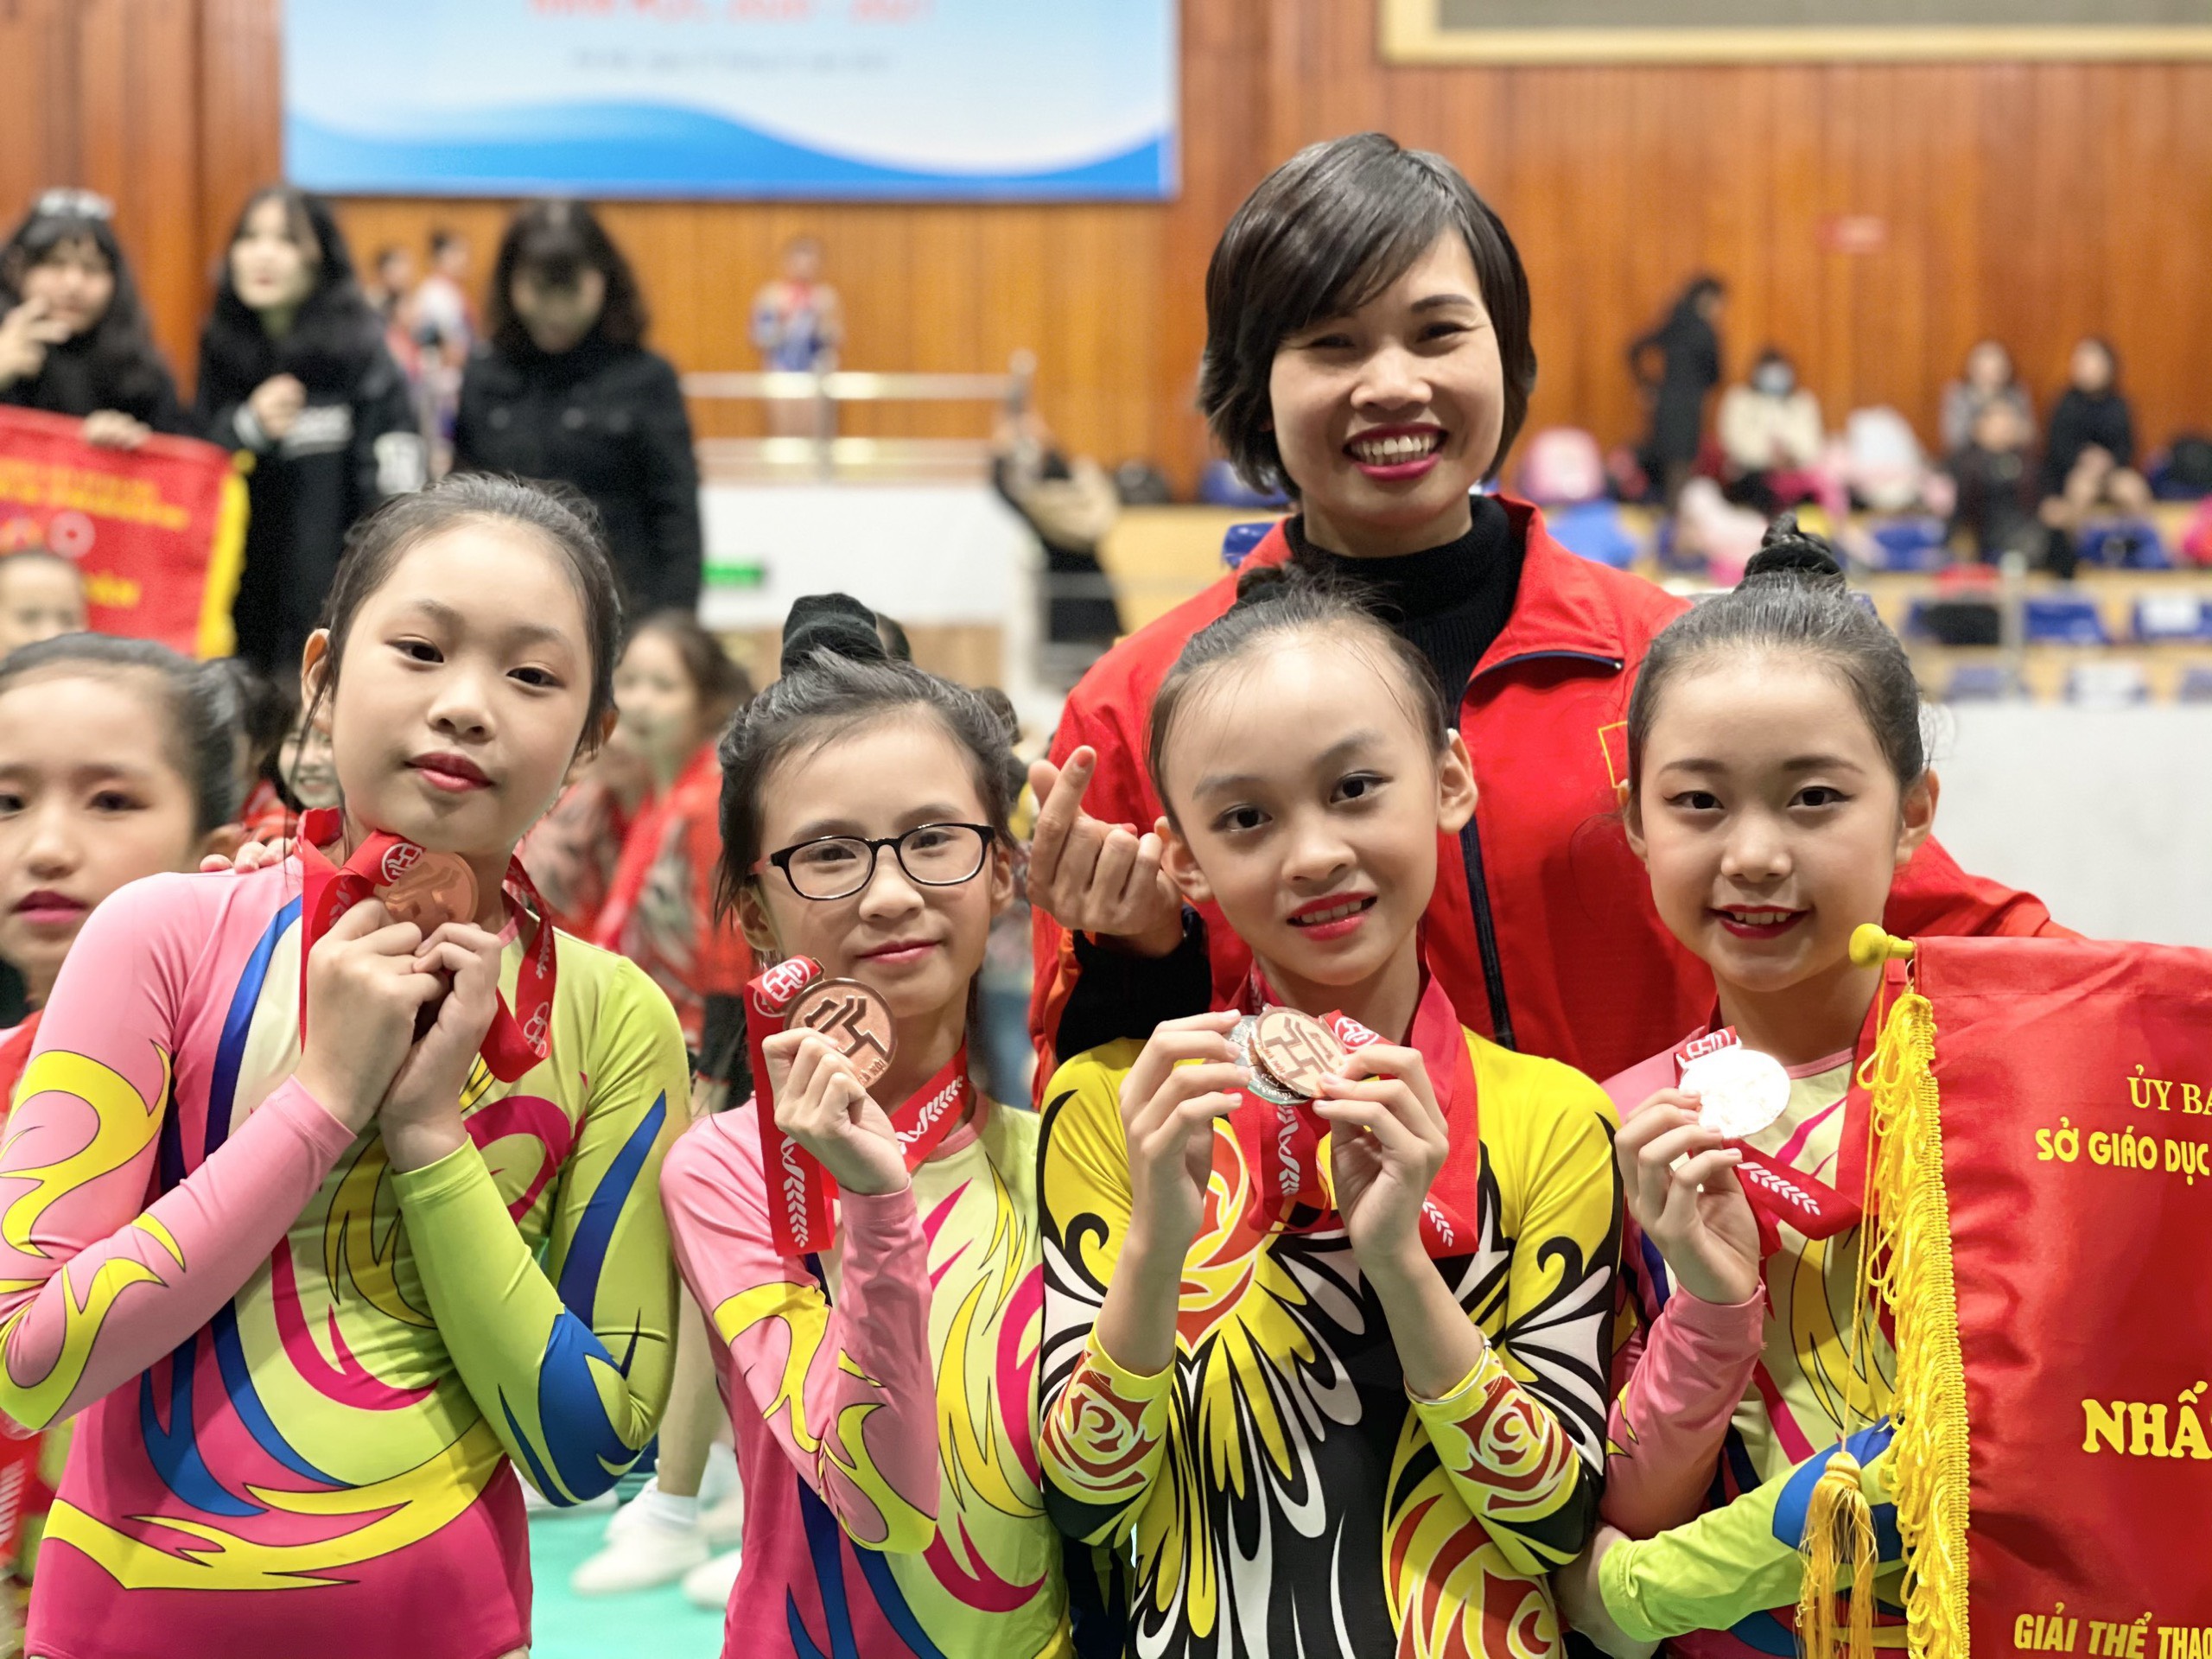 Cơn mưa huy chương - Gần 100 huy chương cho các vận động viên NguyetAnh Academy